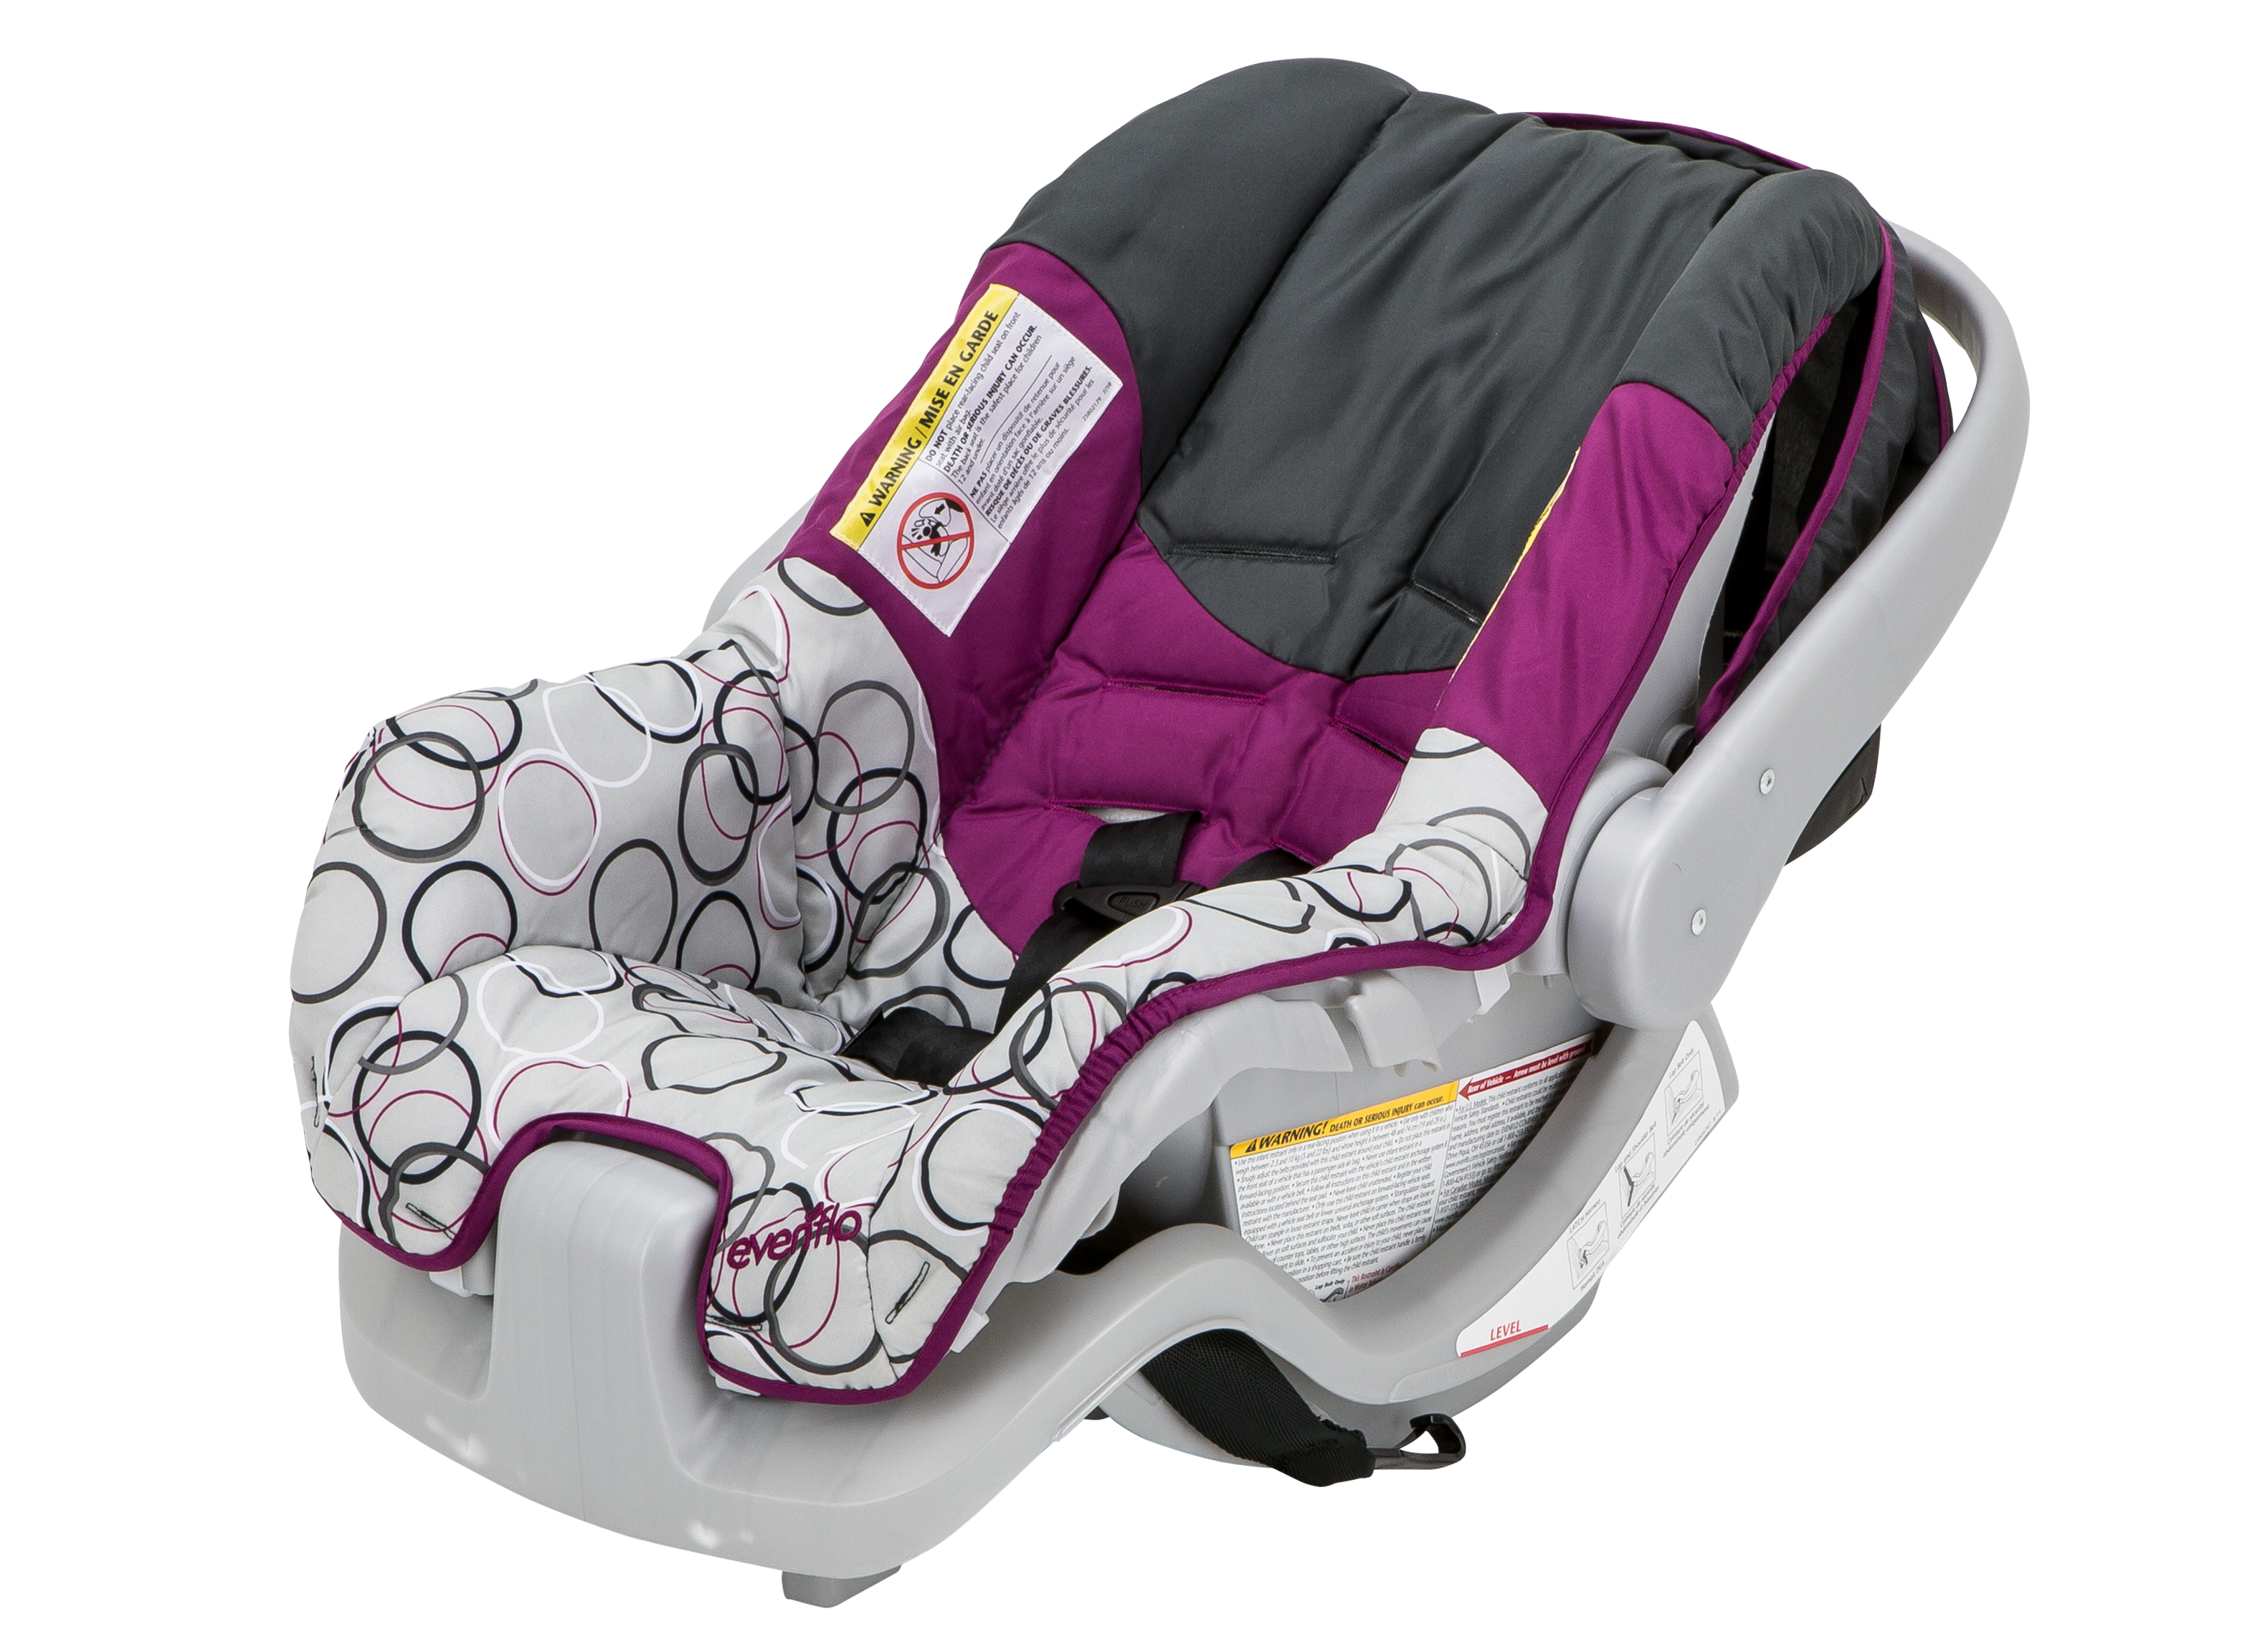 Evenflo Nurture Infant Car Seat Consumer Reports - How To Install Evenflo Nurture Car Seat Base